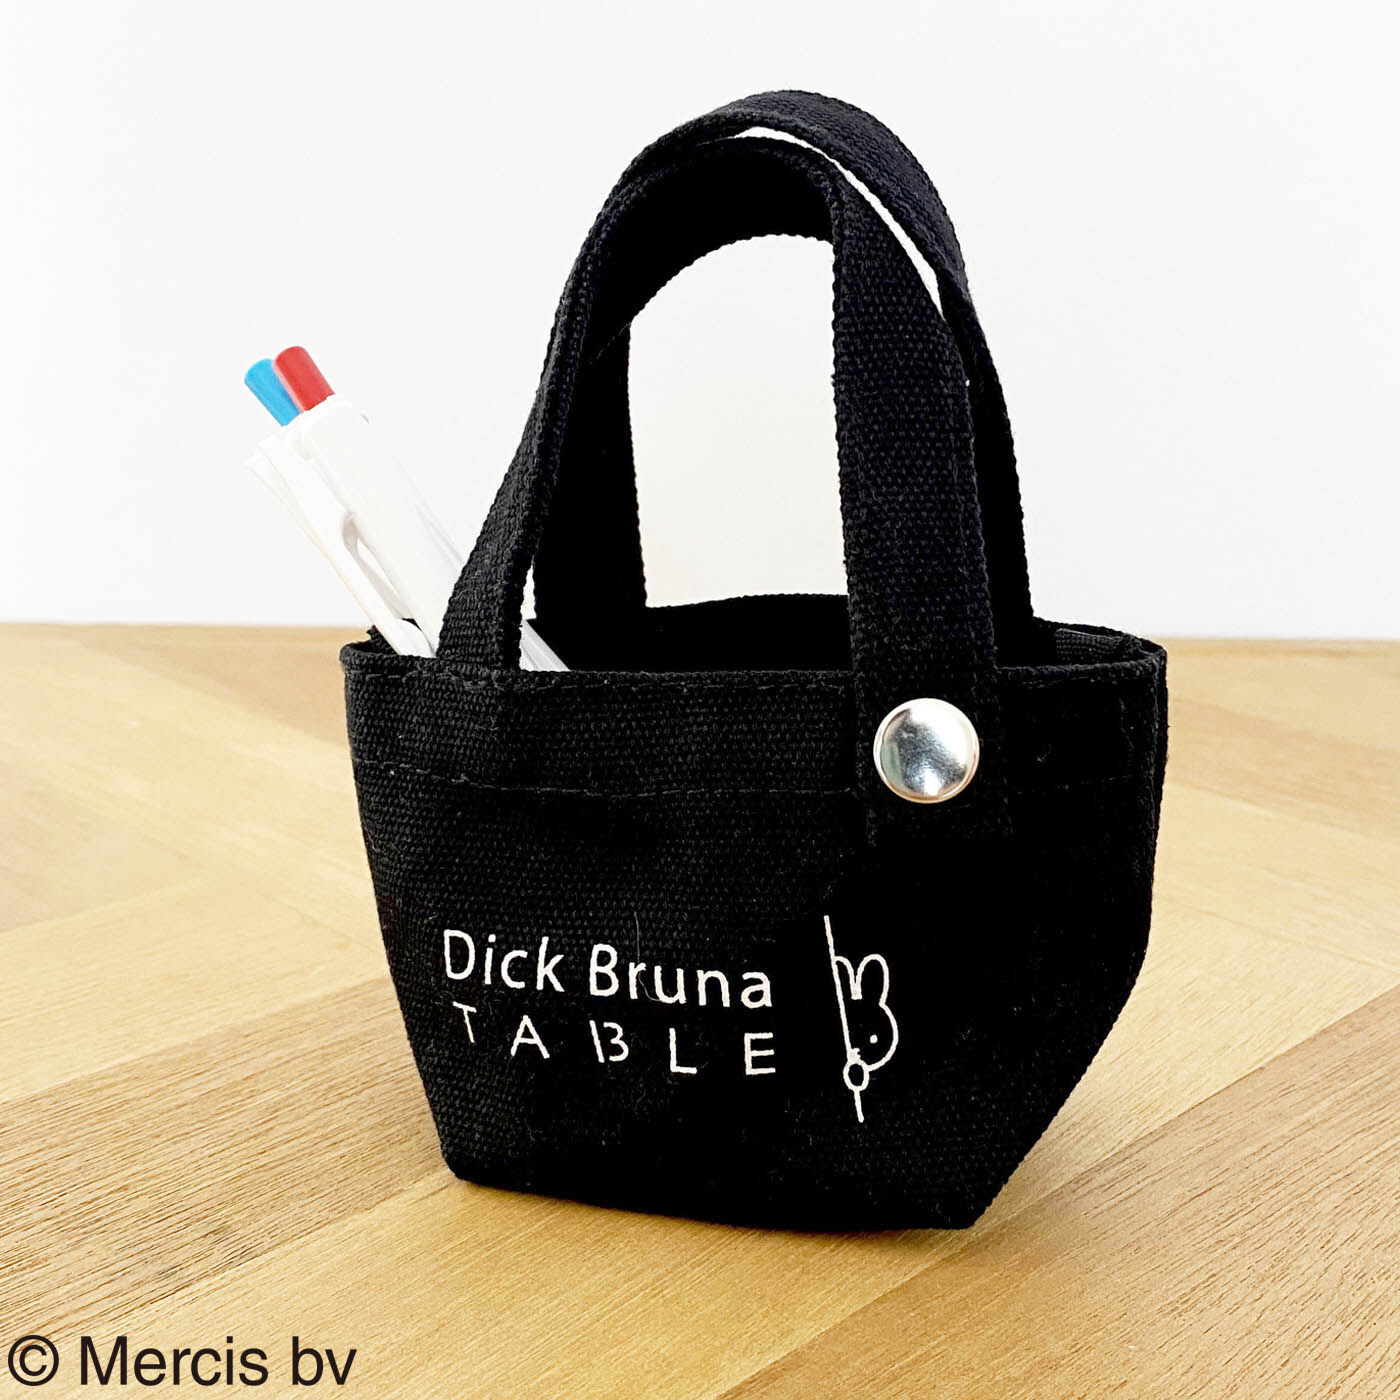 ディック・ブルーナ テーブル|Dick Bruna TABLE  プチトート 黒